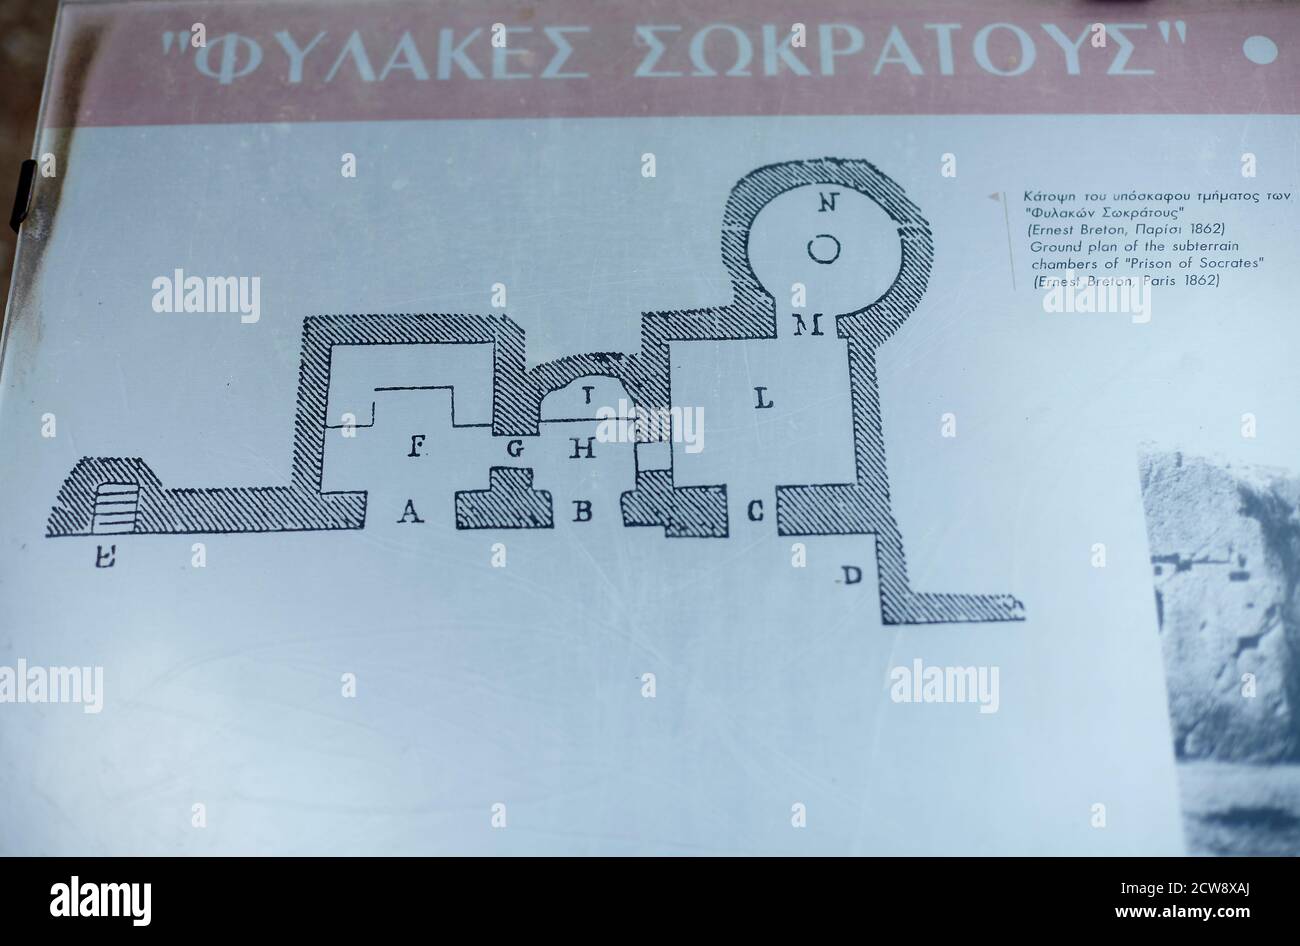 Carte des signes de la prison Socrates à Athènes Grèce Banque D'Images